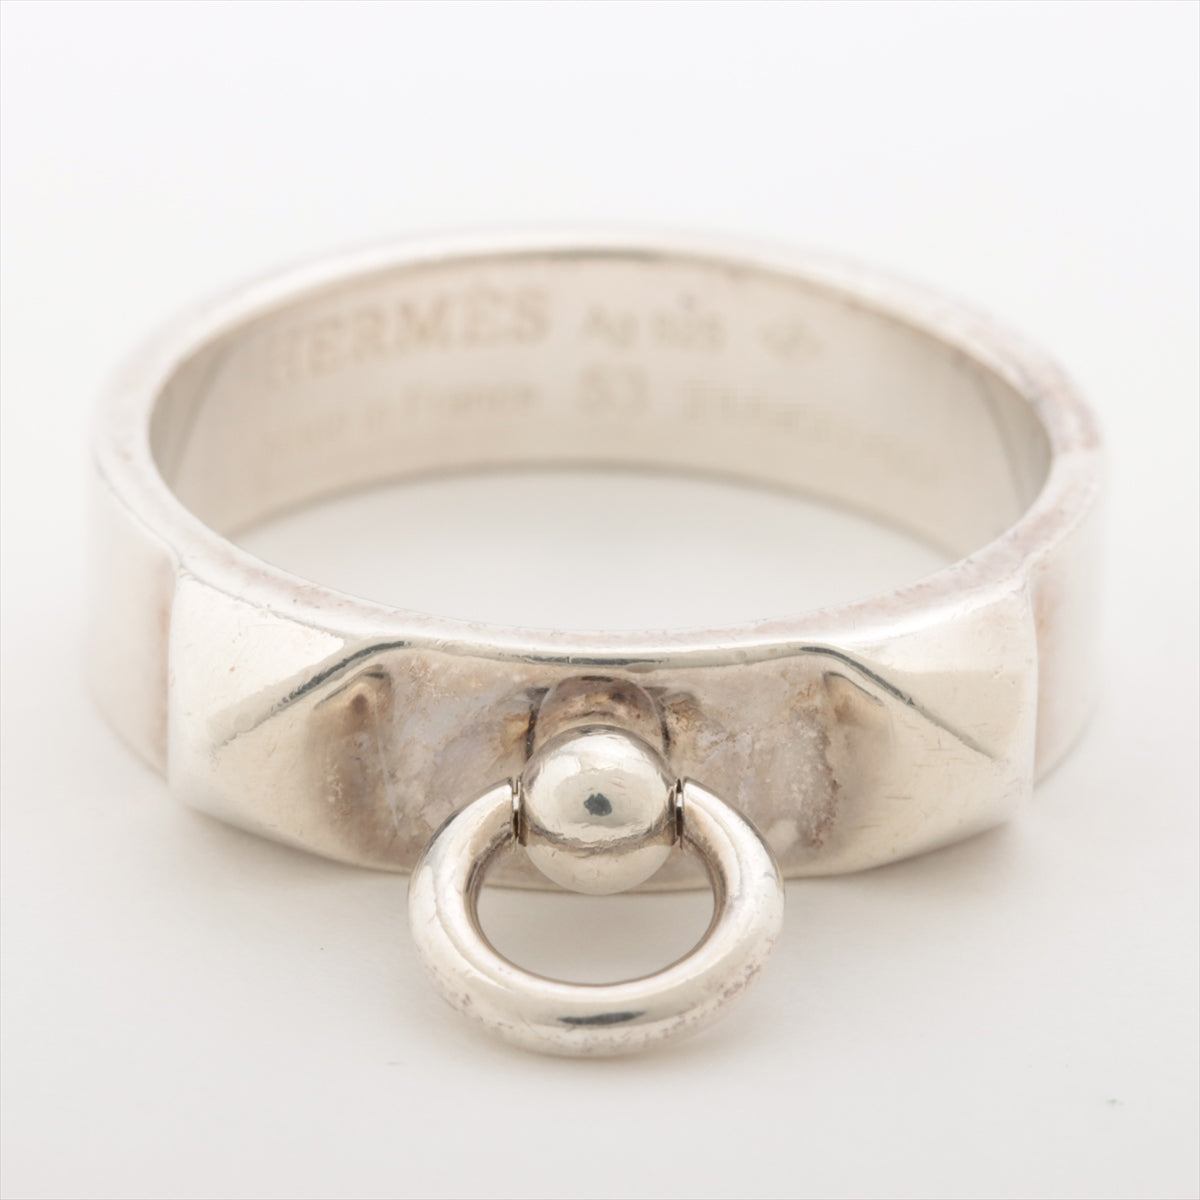 Hermès Collier de Chien rings 53 925 4.8g Silver